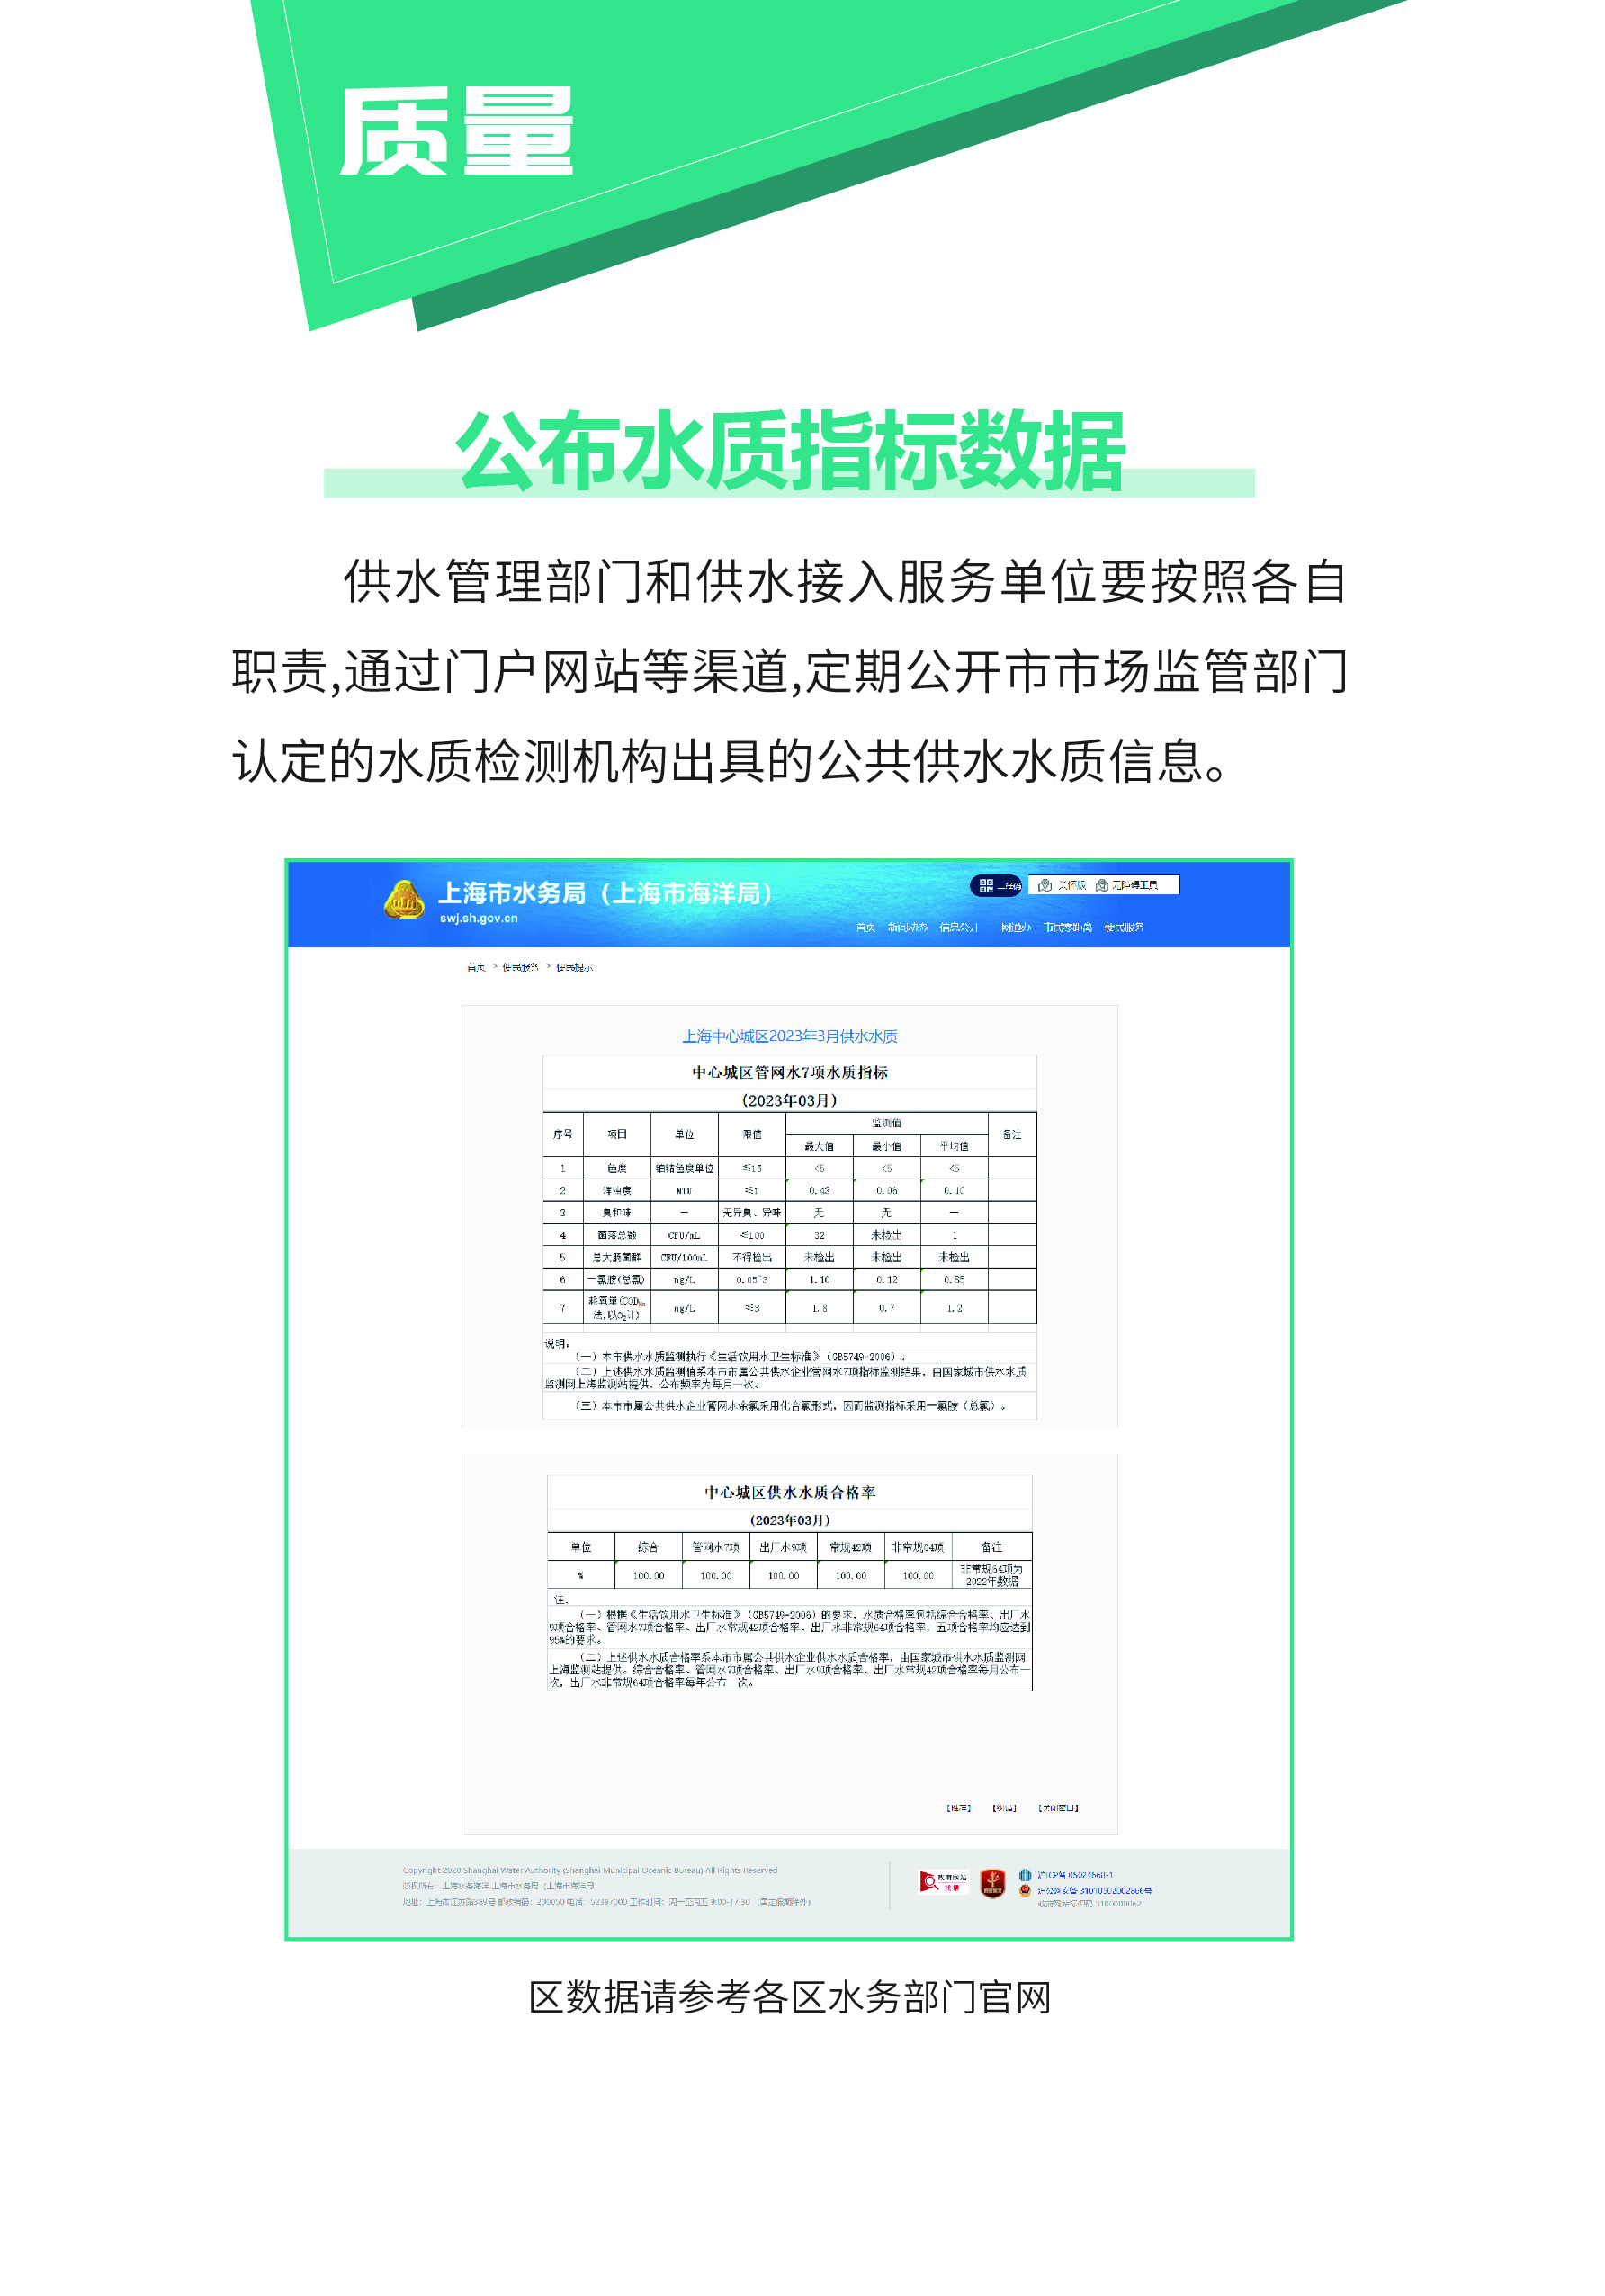 0515-上海供排水接入改革6.0版_页面_06.jpg